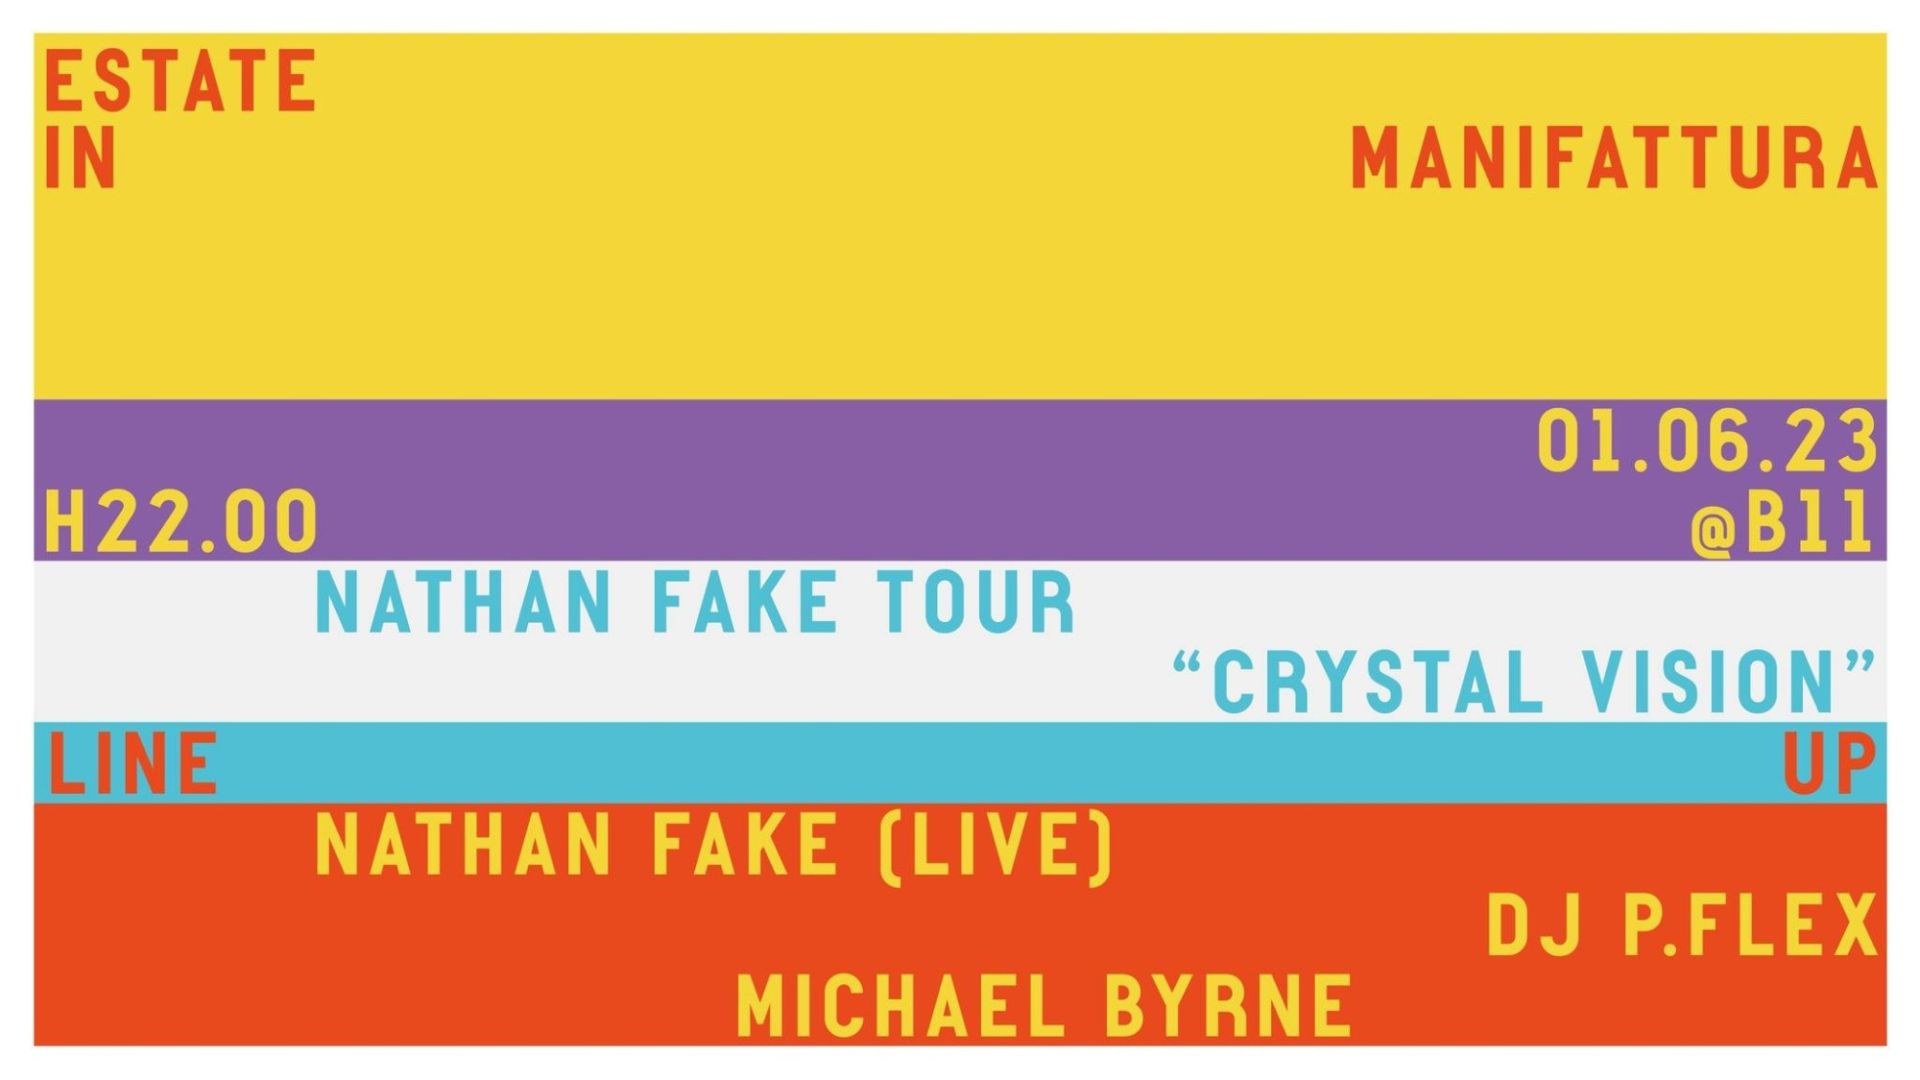 Nathan Fake Tour “Crystal Vision”